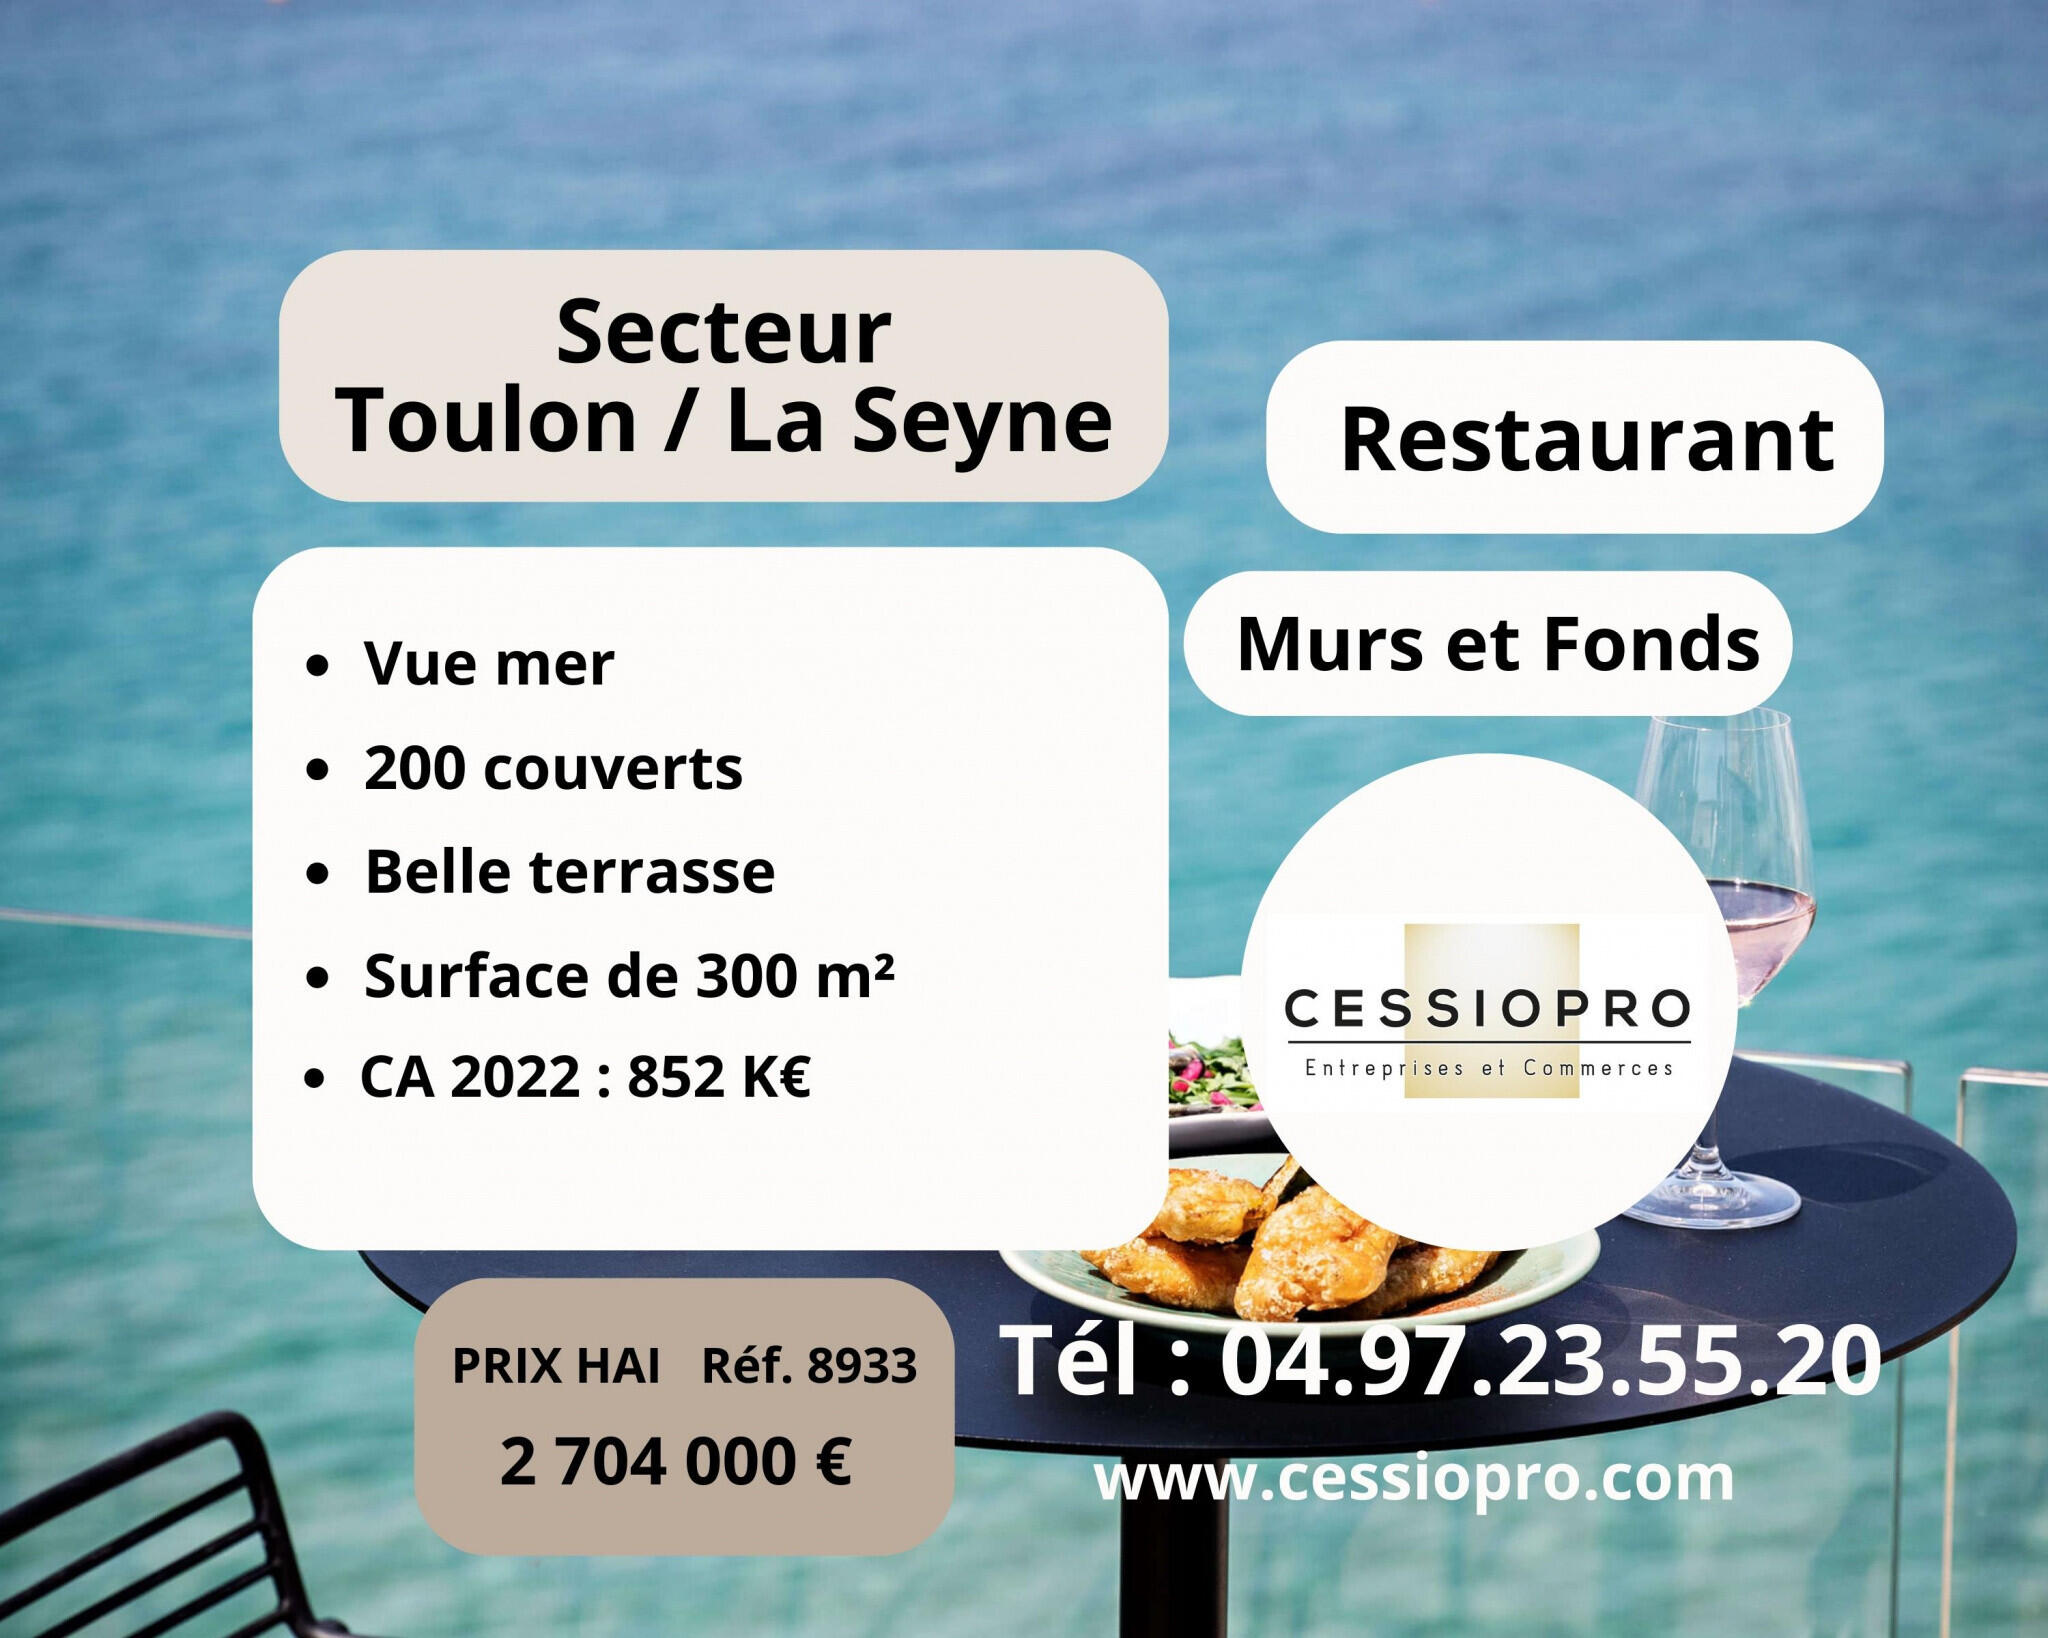 A vendre murs et fonds restaurant 300m² à Toulon